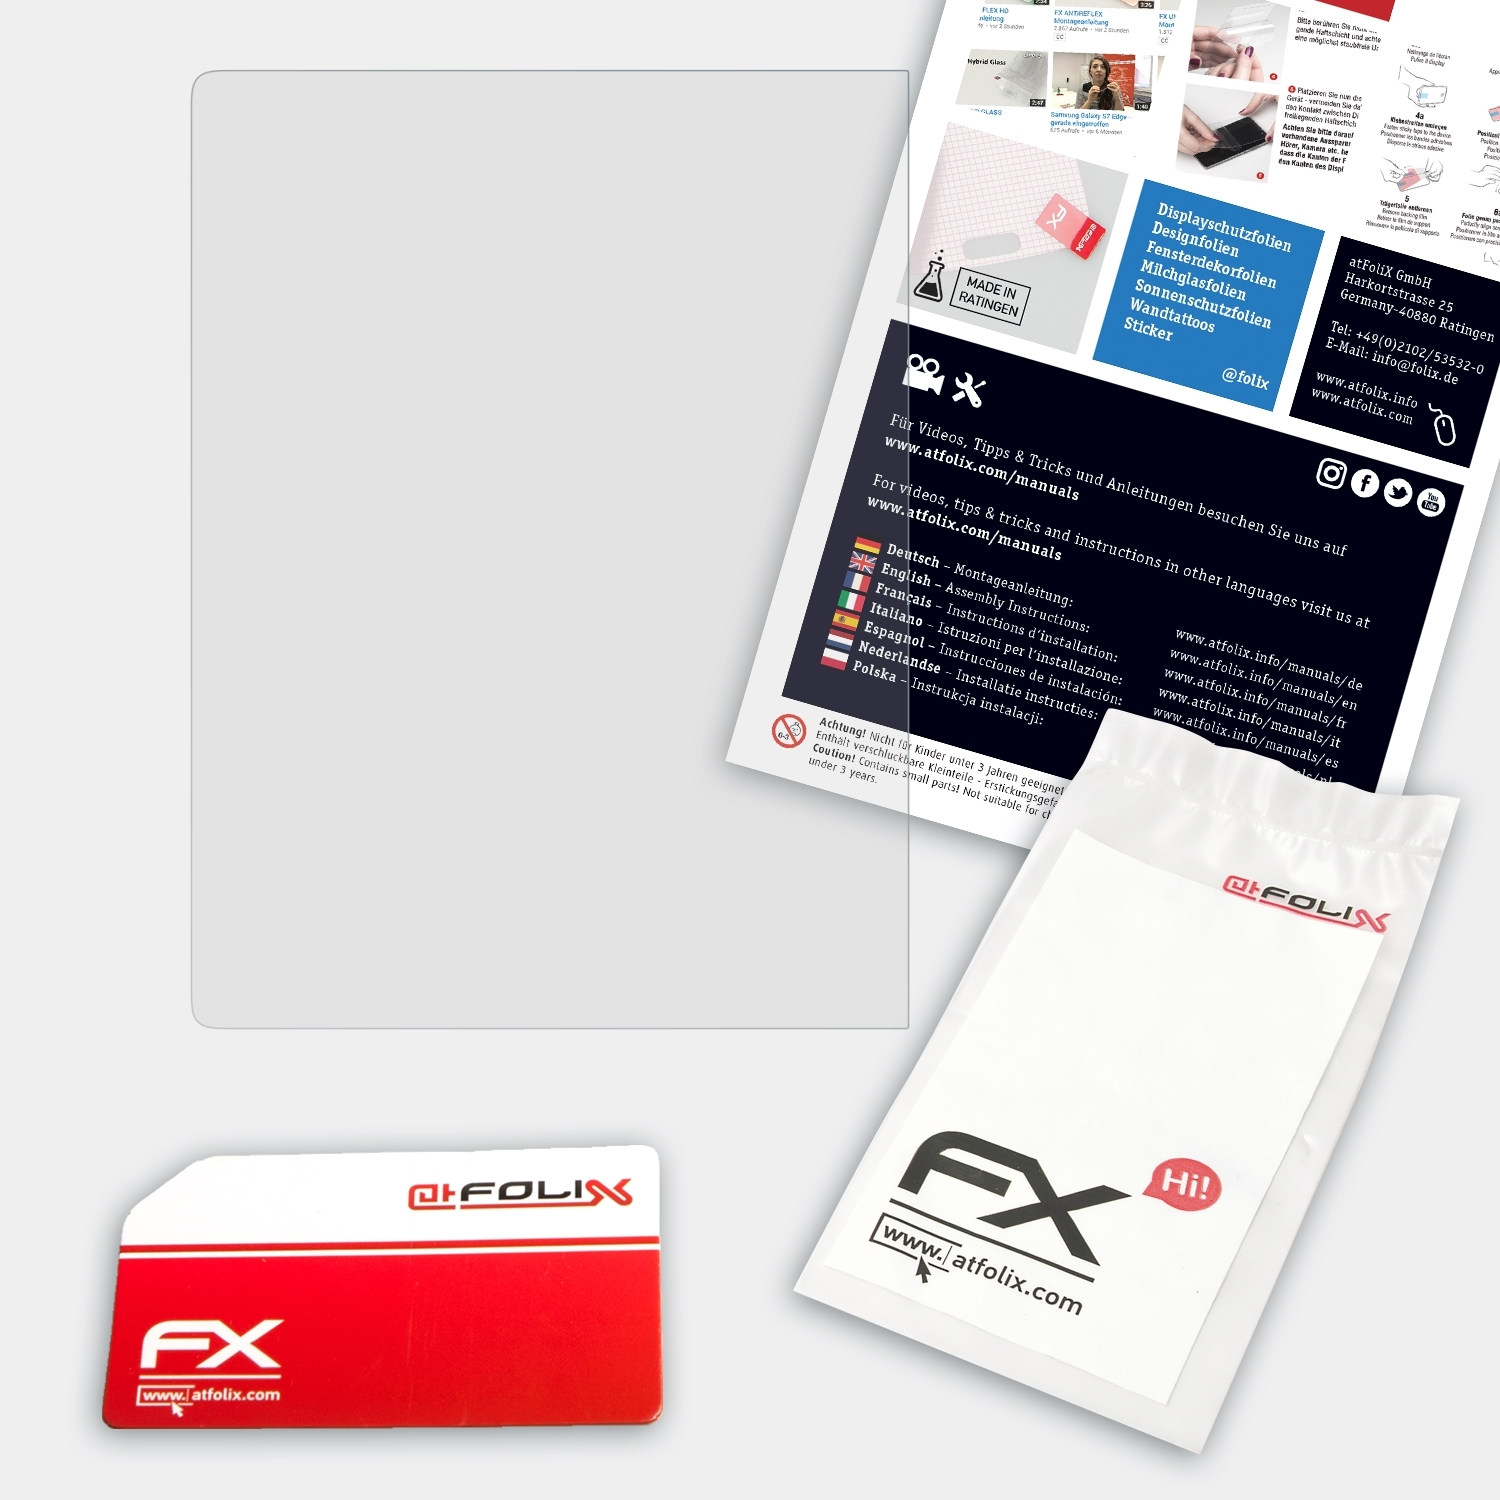 ATFOLIX InkPad) PocketBook Schutzglas(für FX-Hybrid-Glass